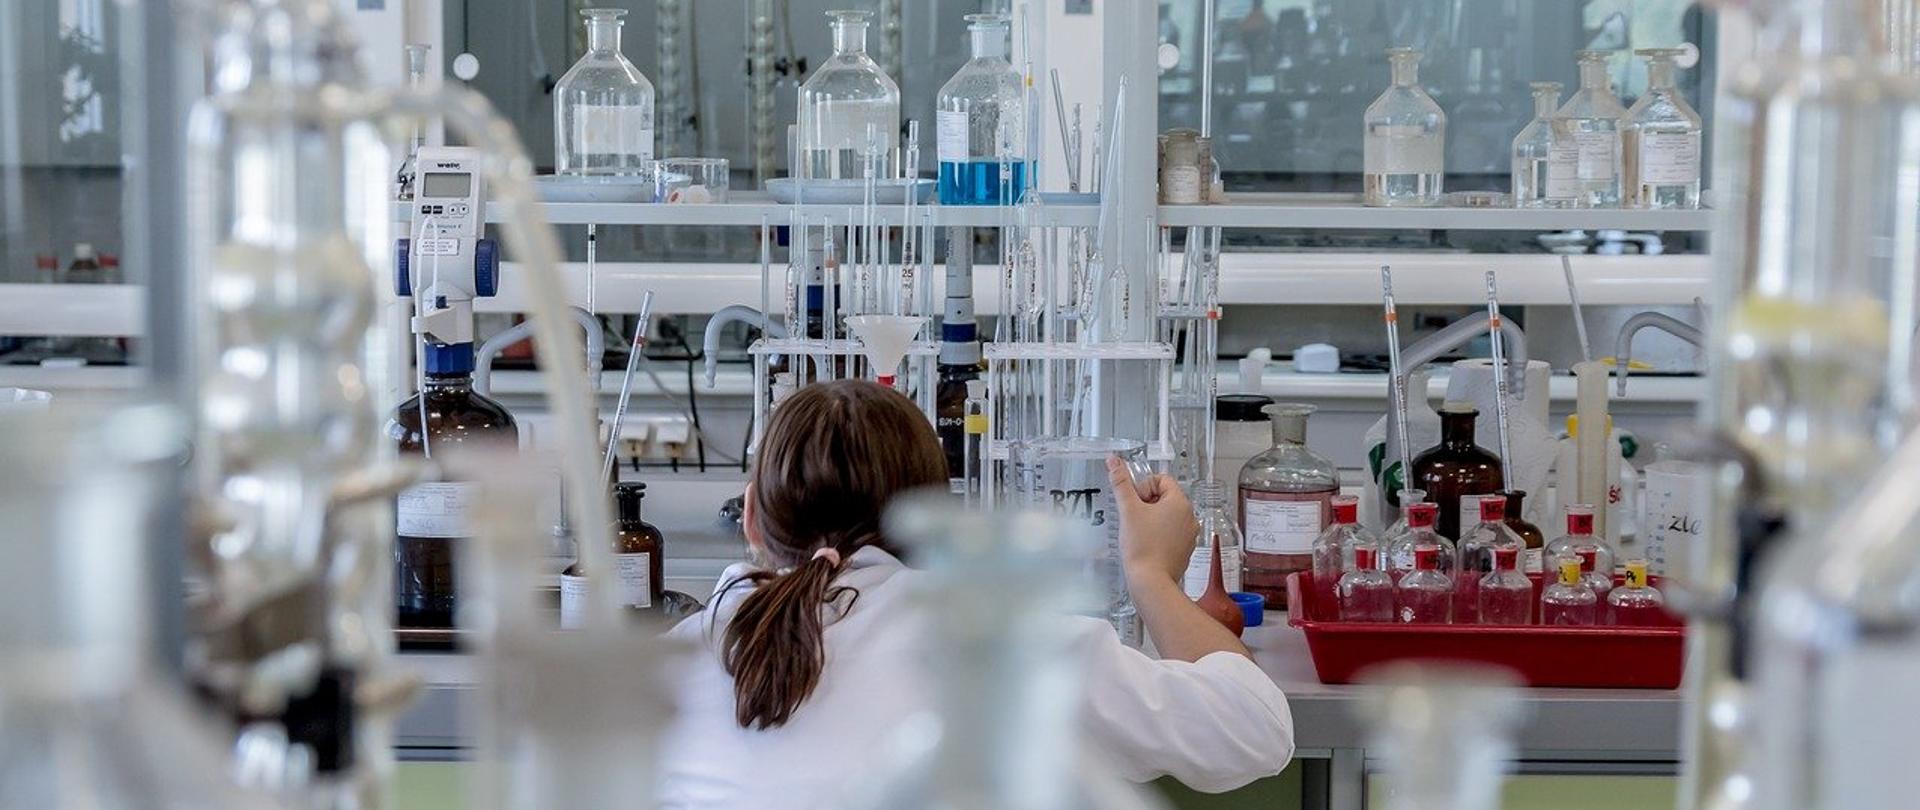 zdjęcie przedstawia laboratorium w którym przy stole znajduje się osoba wykonująca badania. na stołach widać aparaturę laboratoryjną oraz szklane butelki